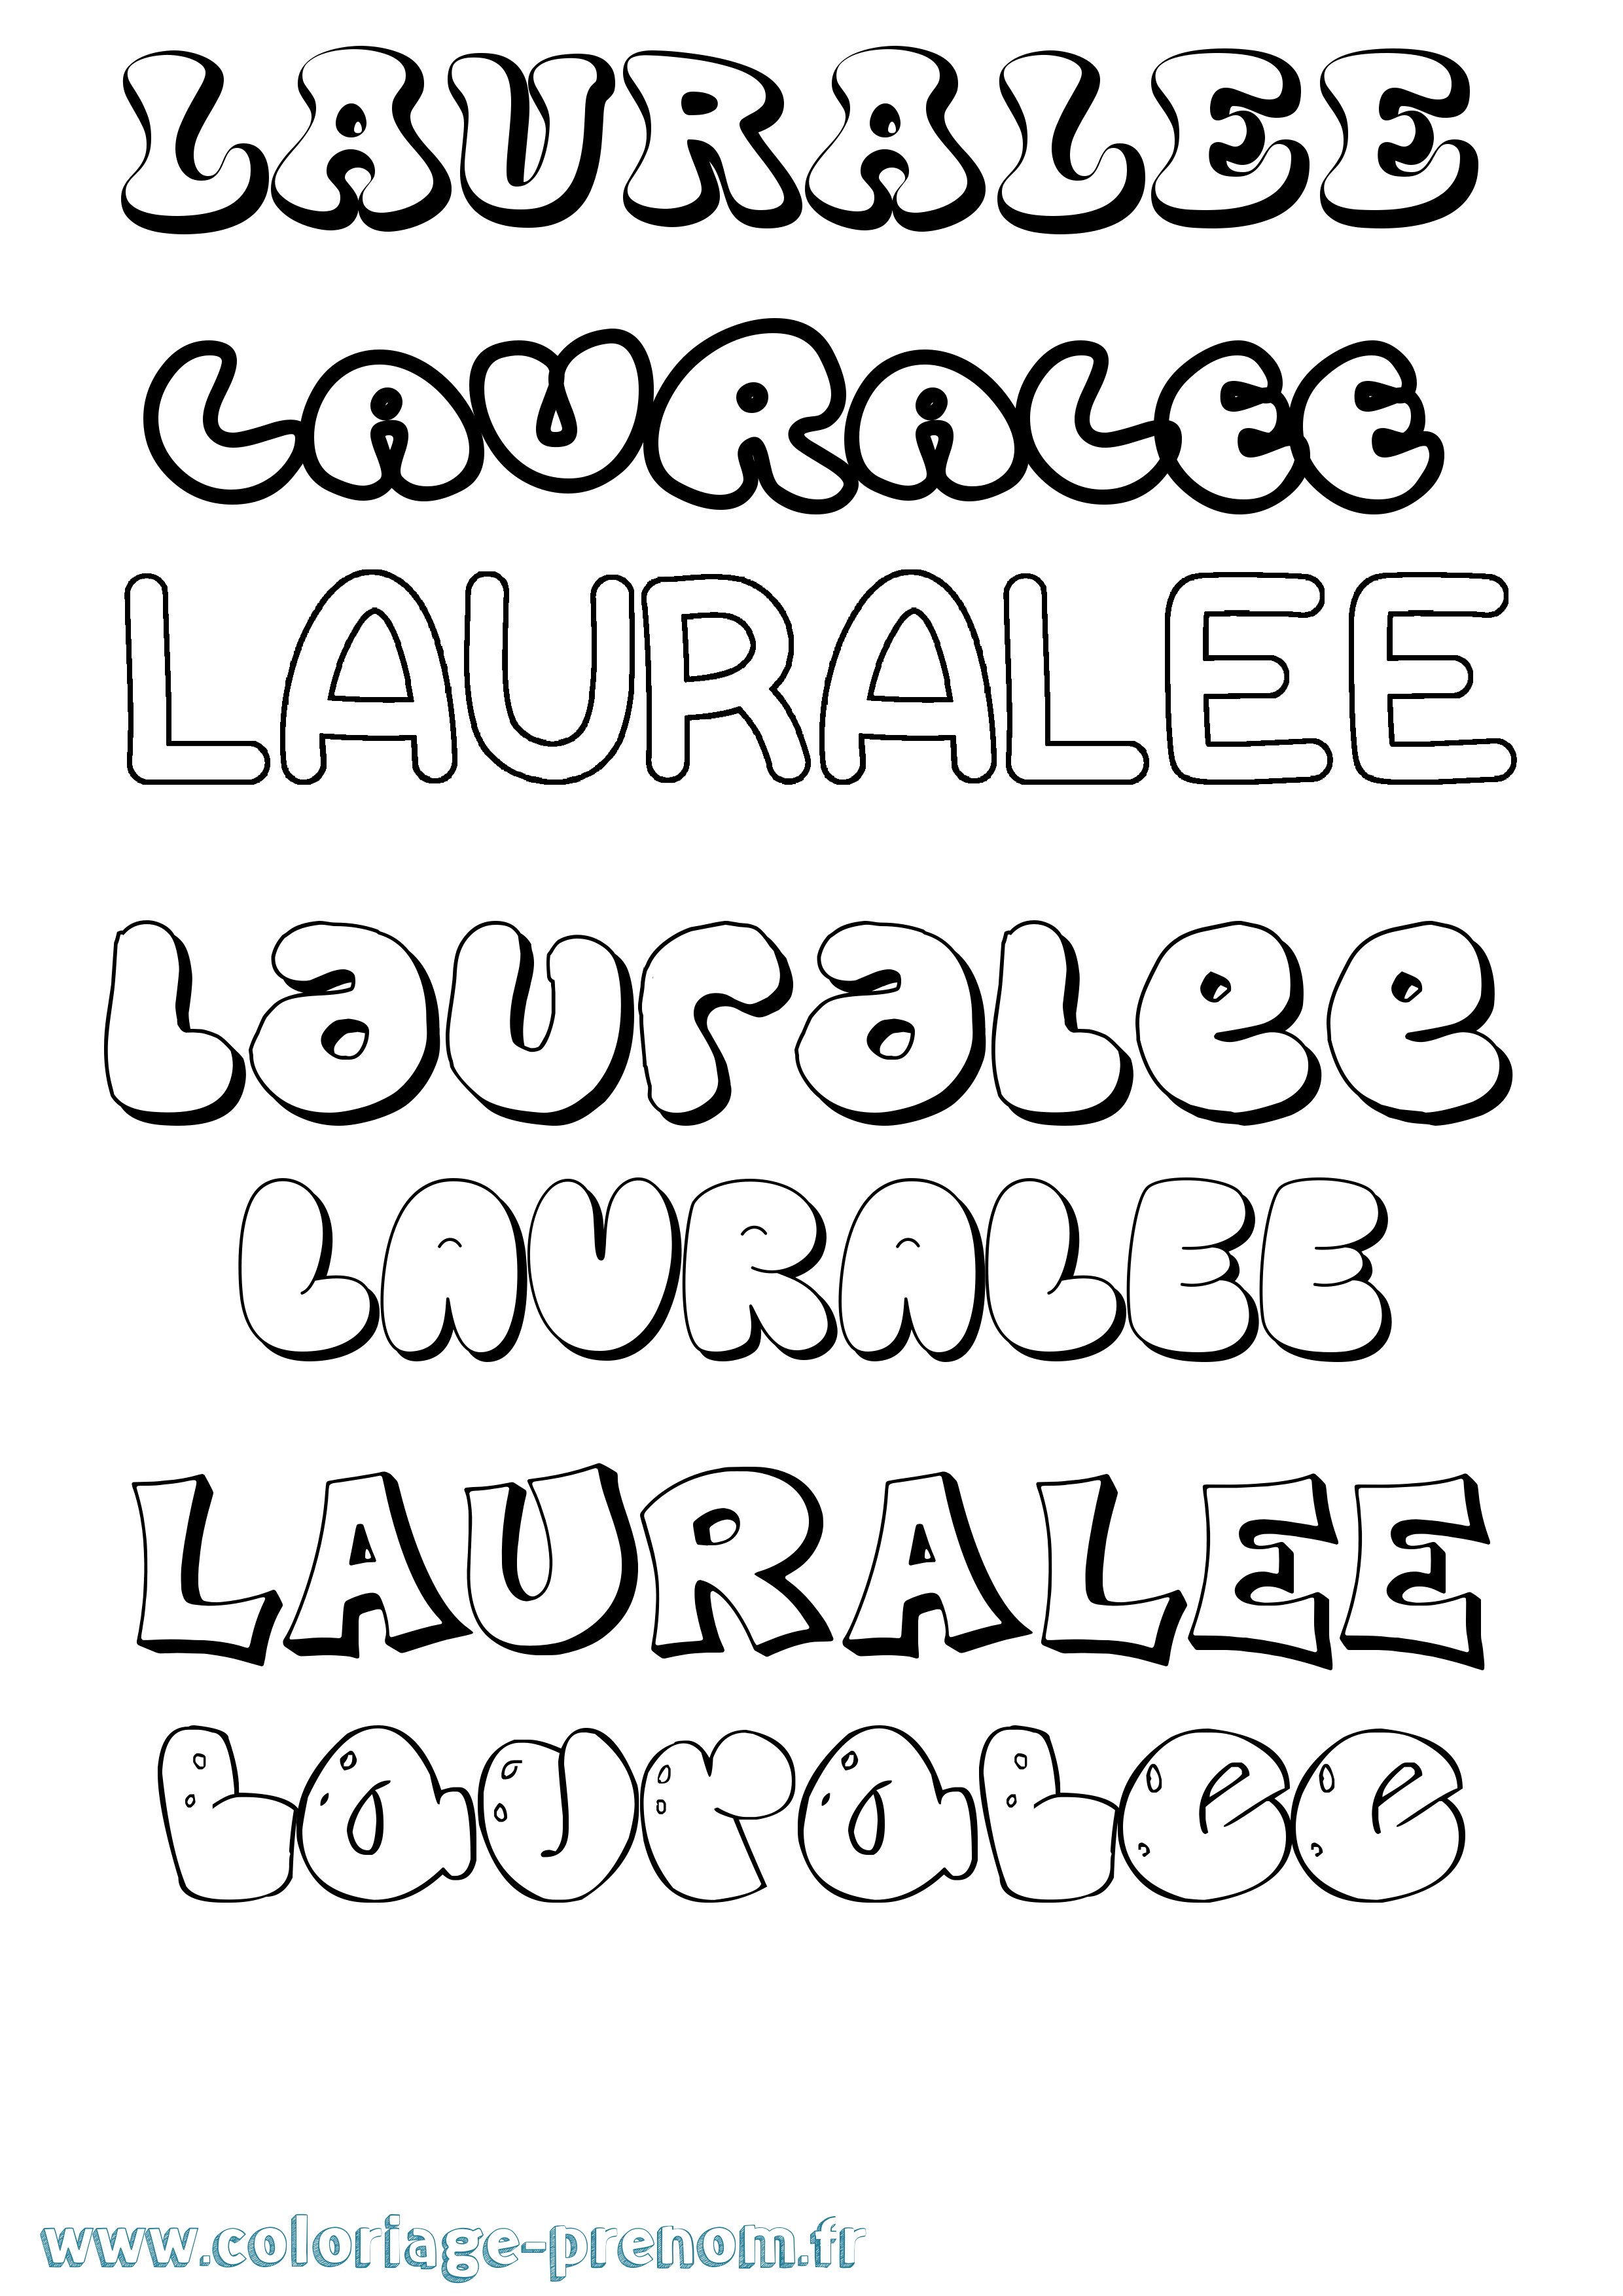 Coloriage prénom Lauralee Bubble